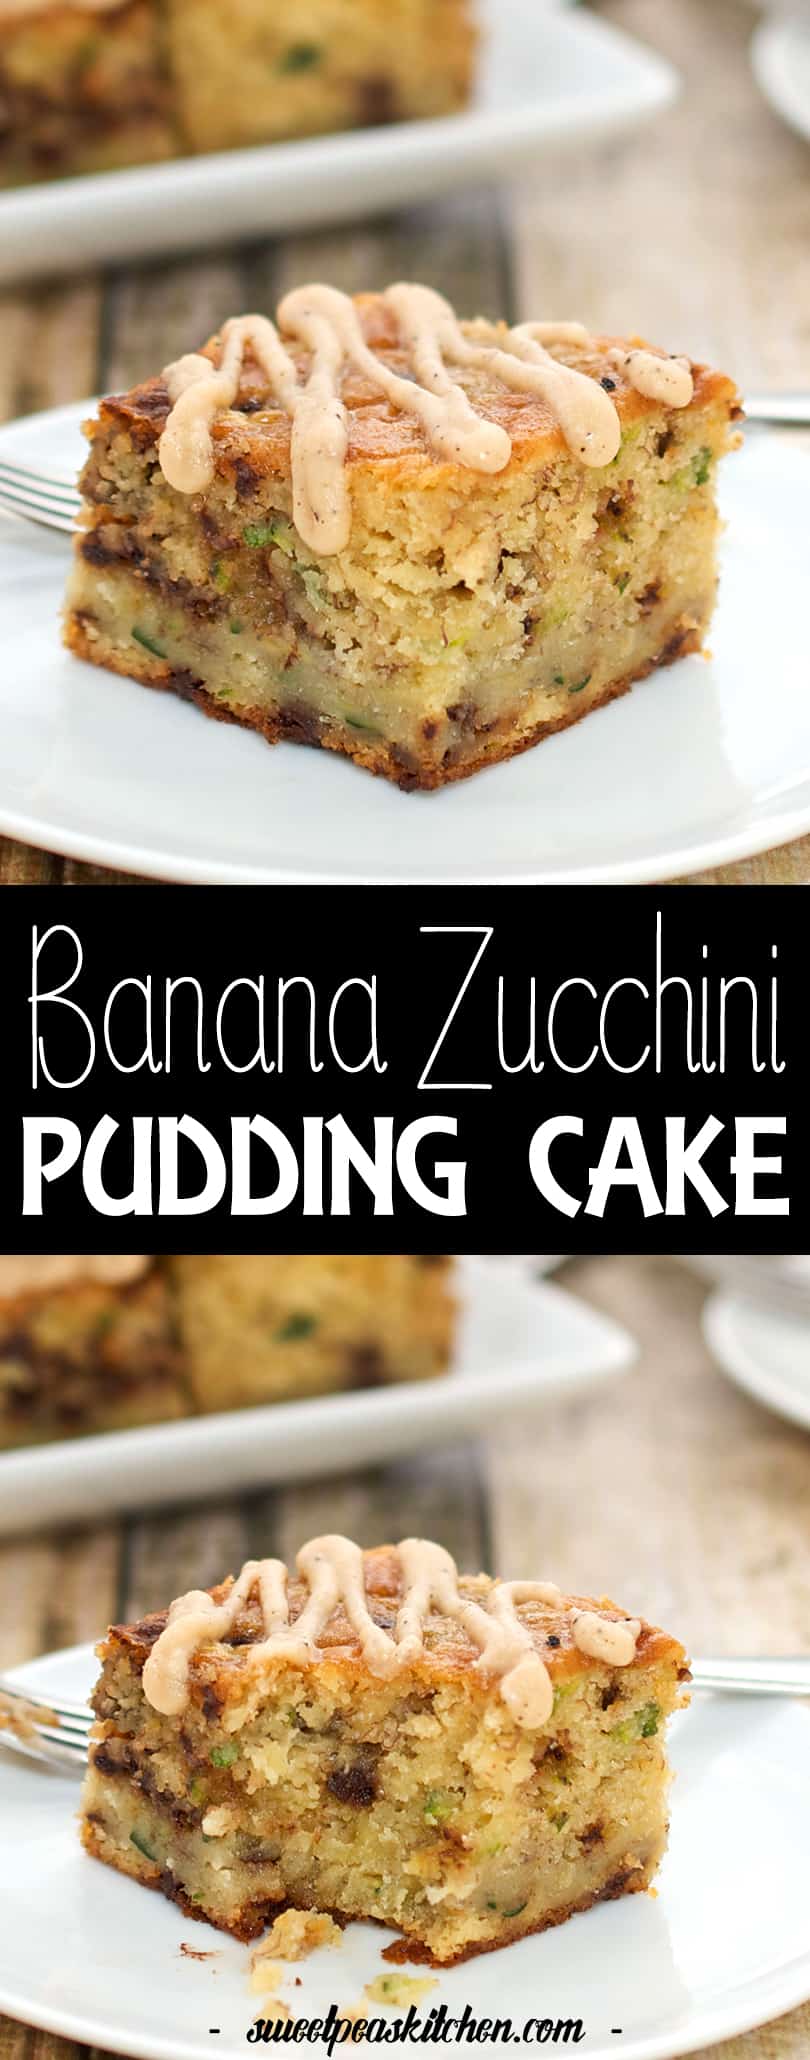 banana zucchini pudding cake